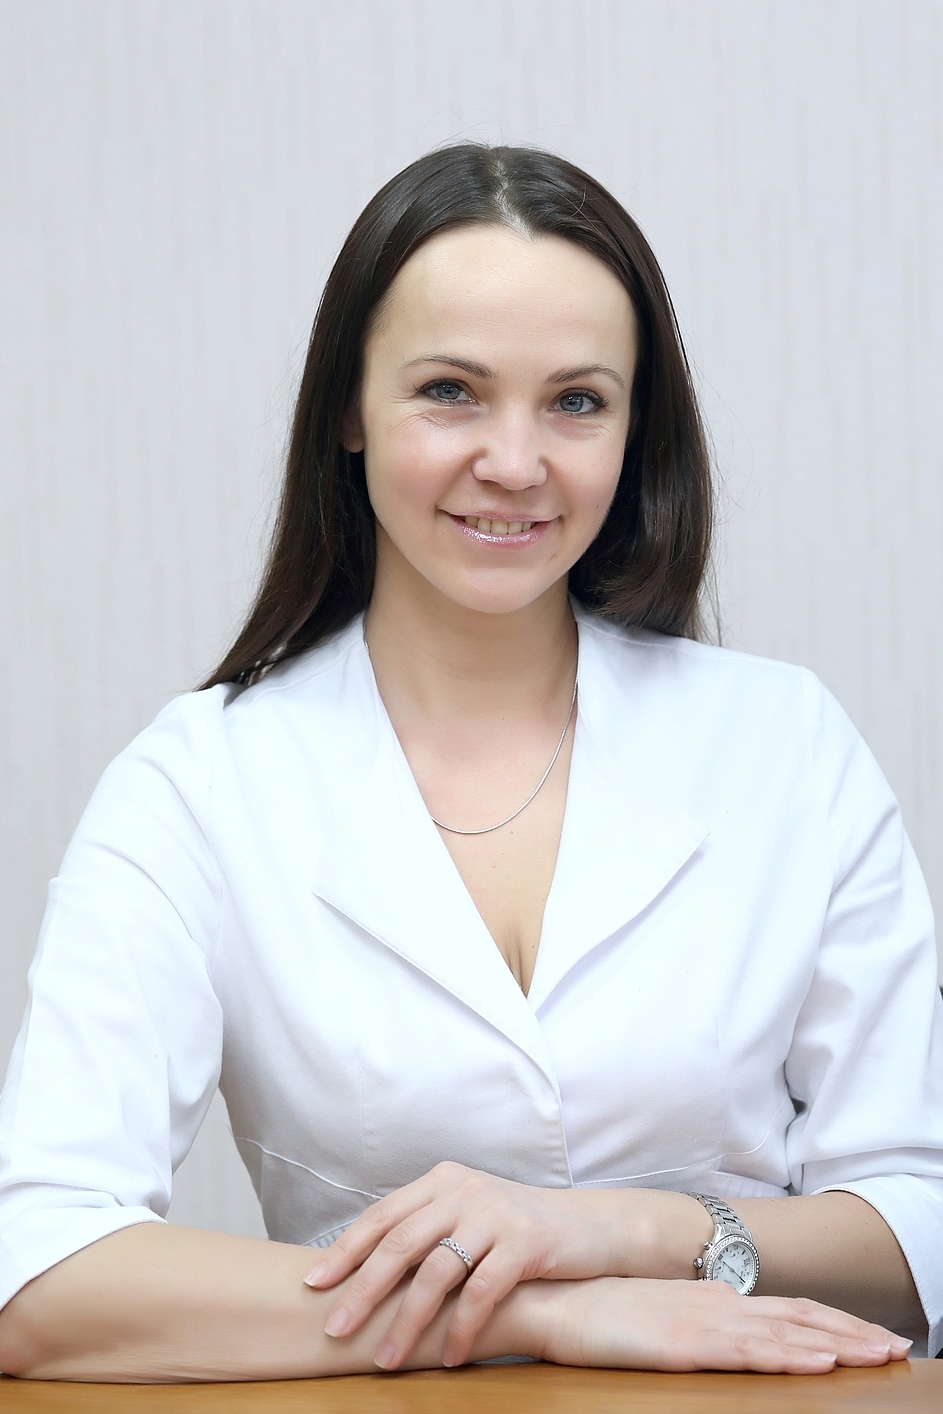 Шалимова Наталия Александровна - заведующая отделением ортопедической стоматологии